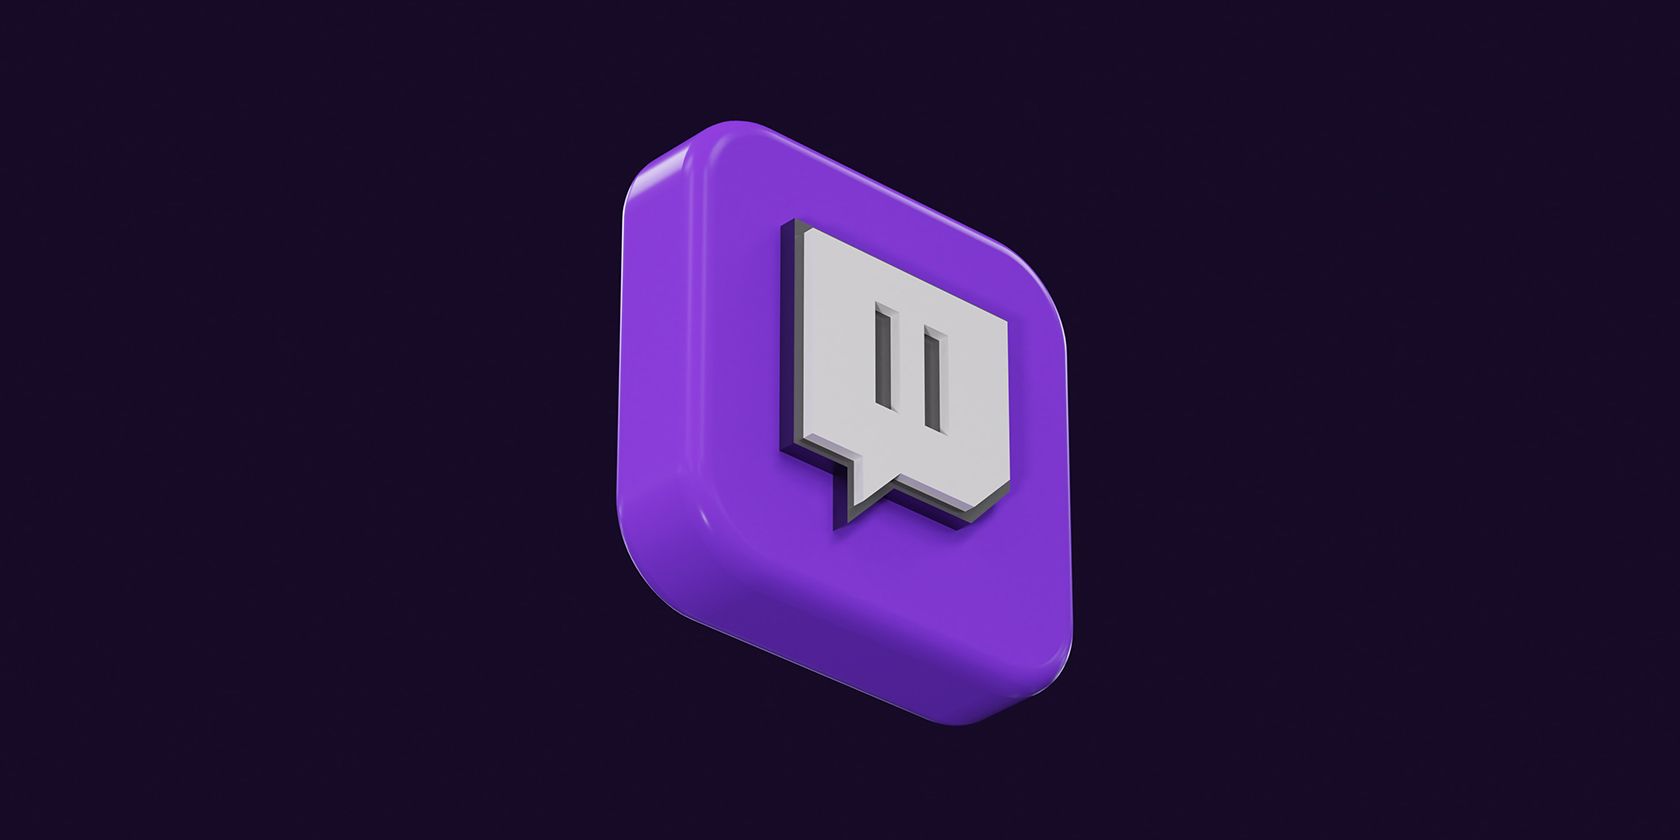 The Twitch Logo